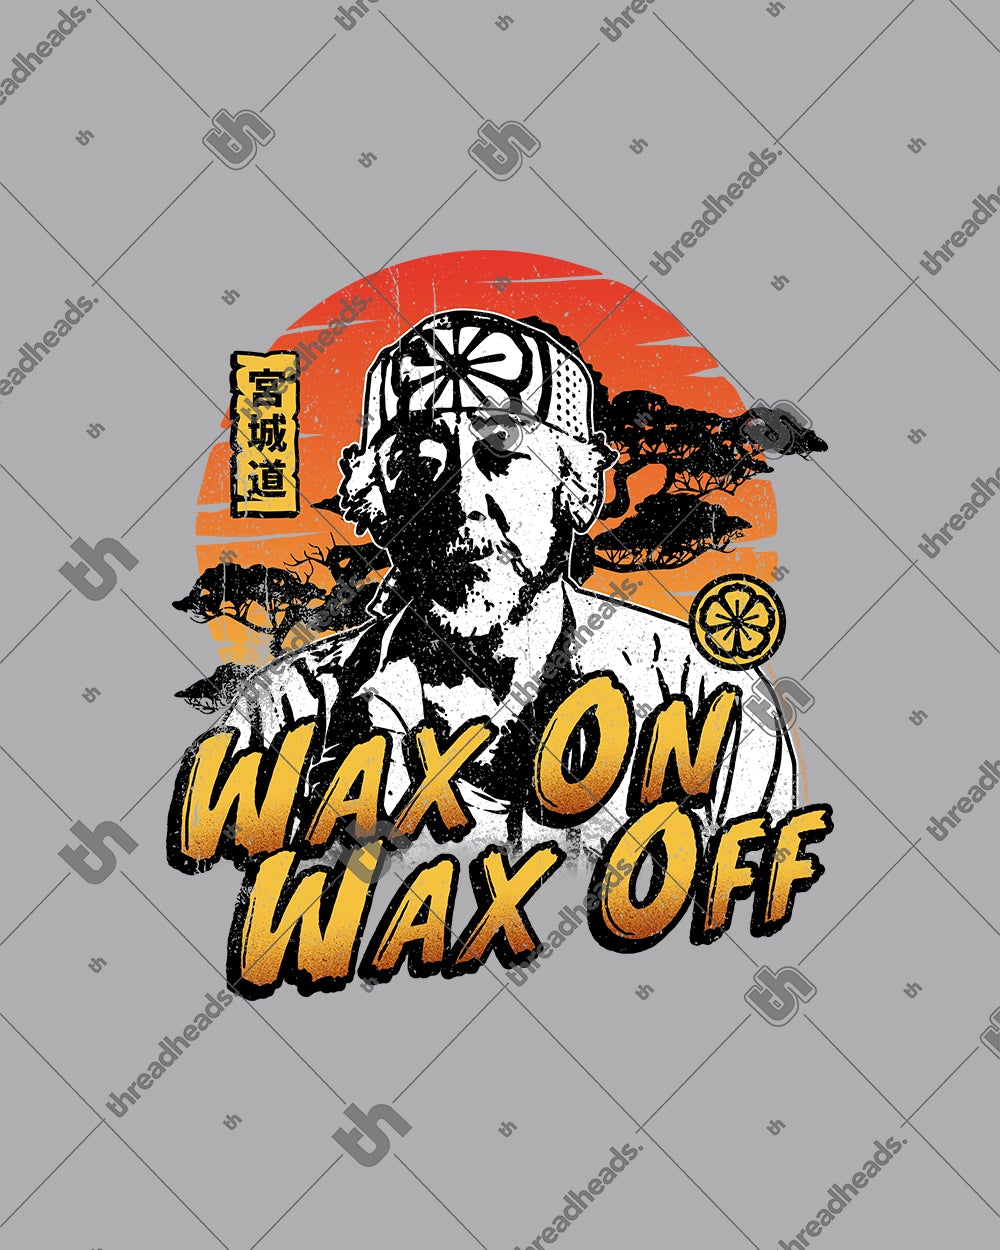 mr miyagi wax on wax off